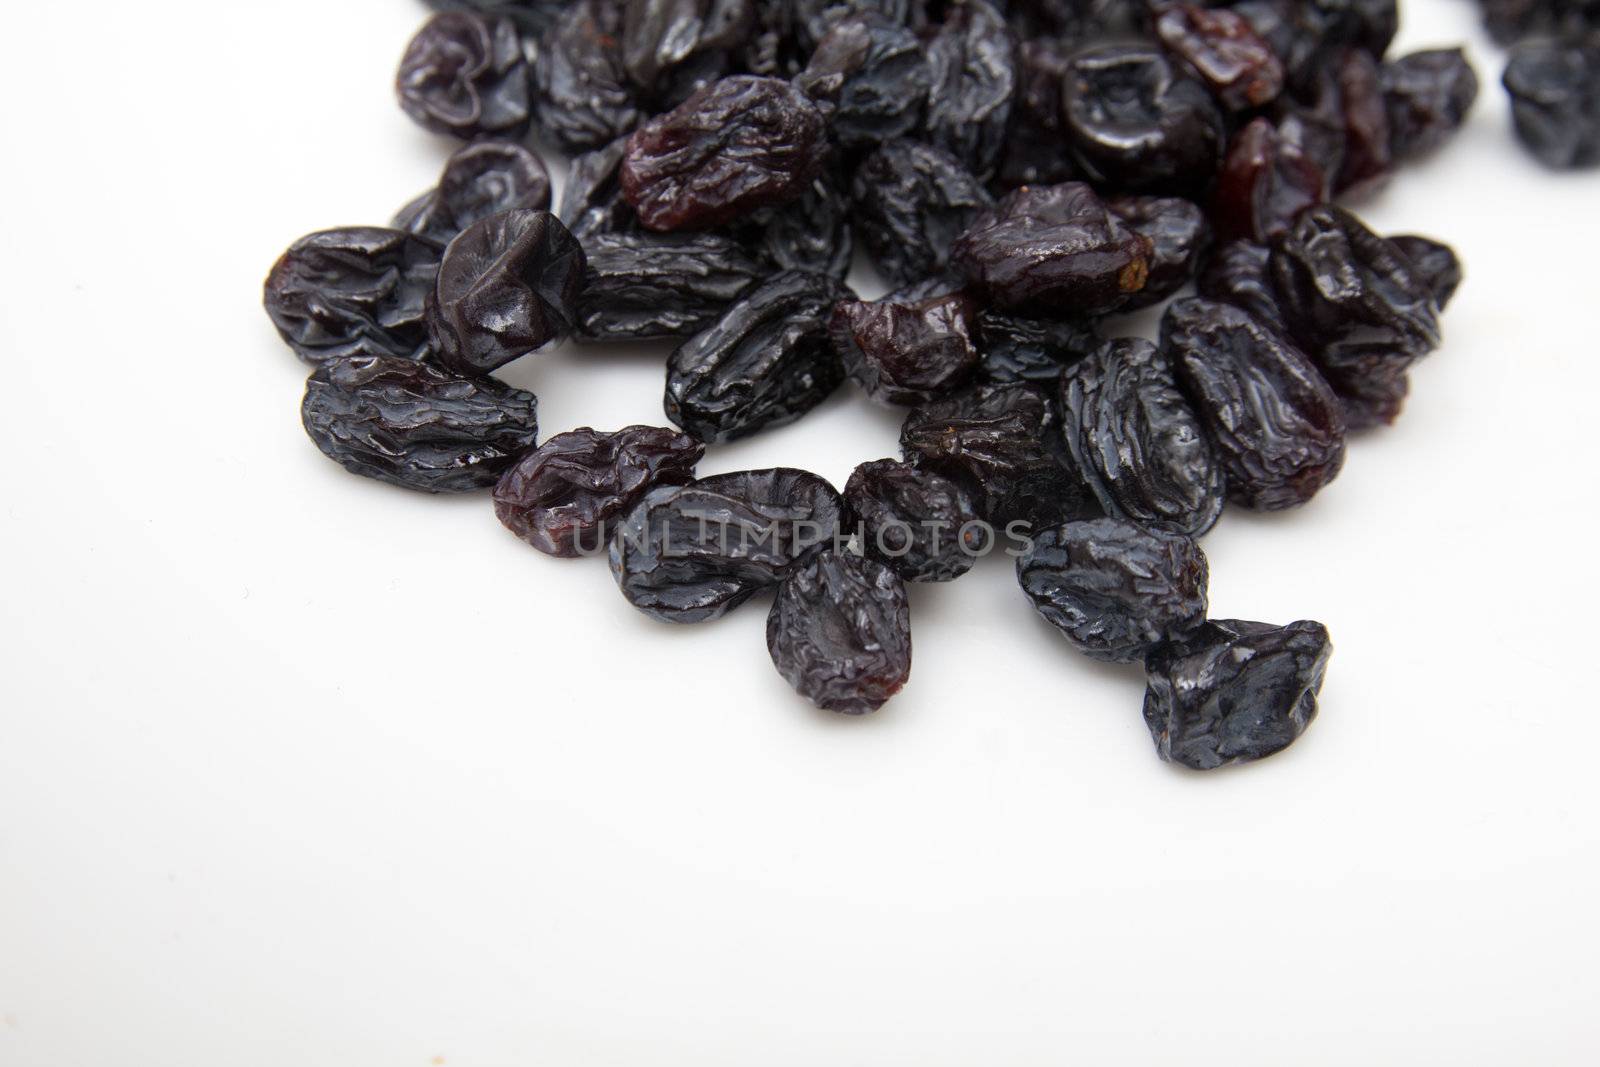 black raisins on a white background by schankz